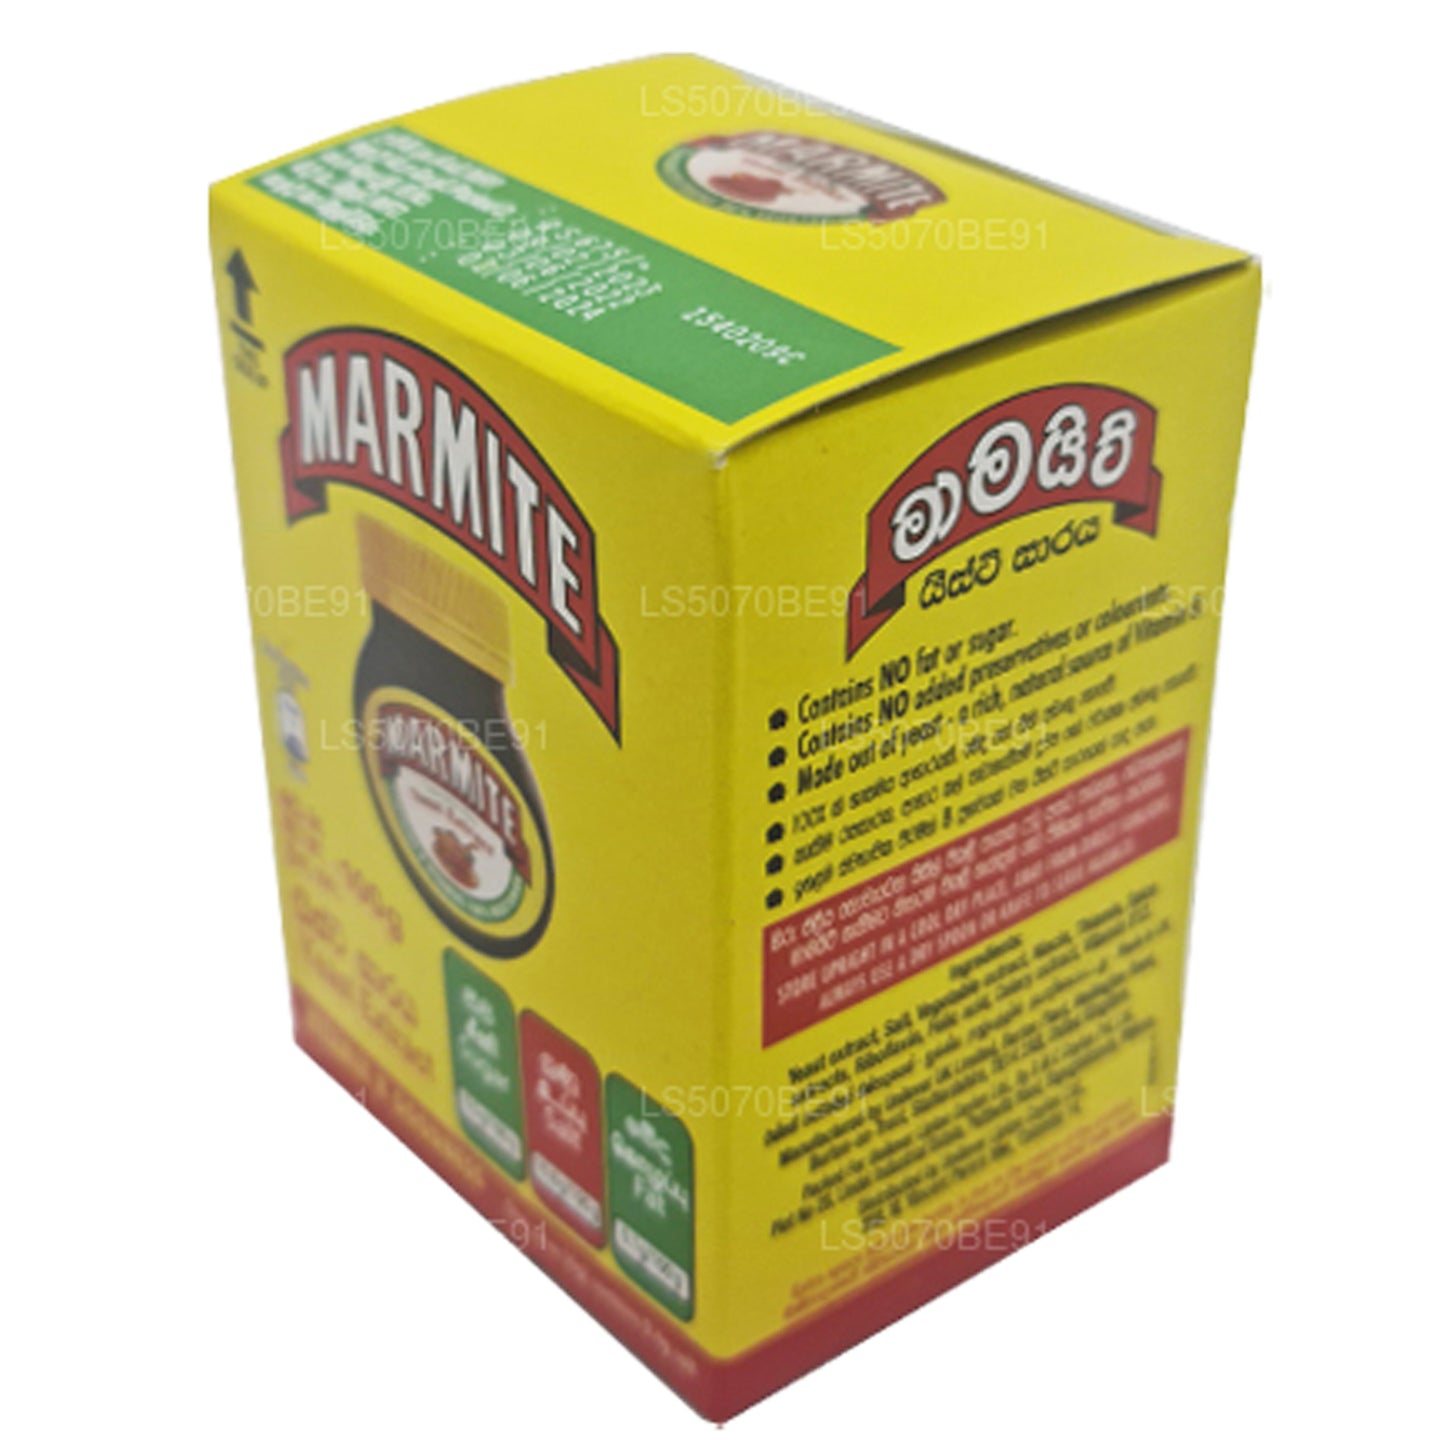 Extrait de levure de marmite (100 g)